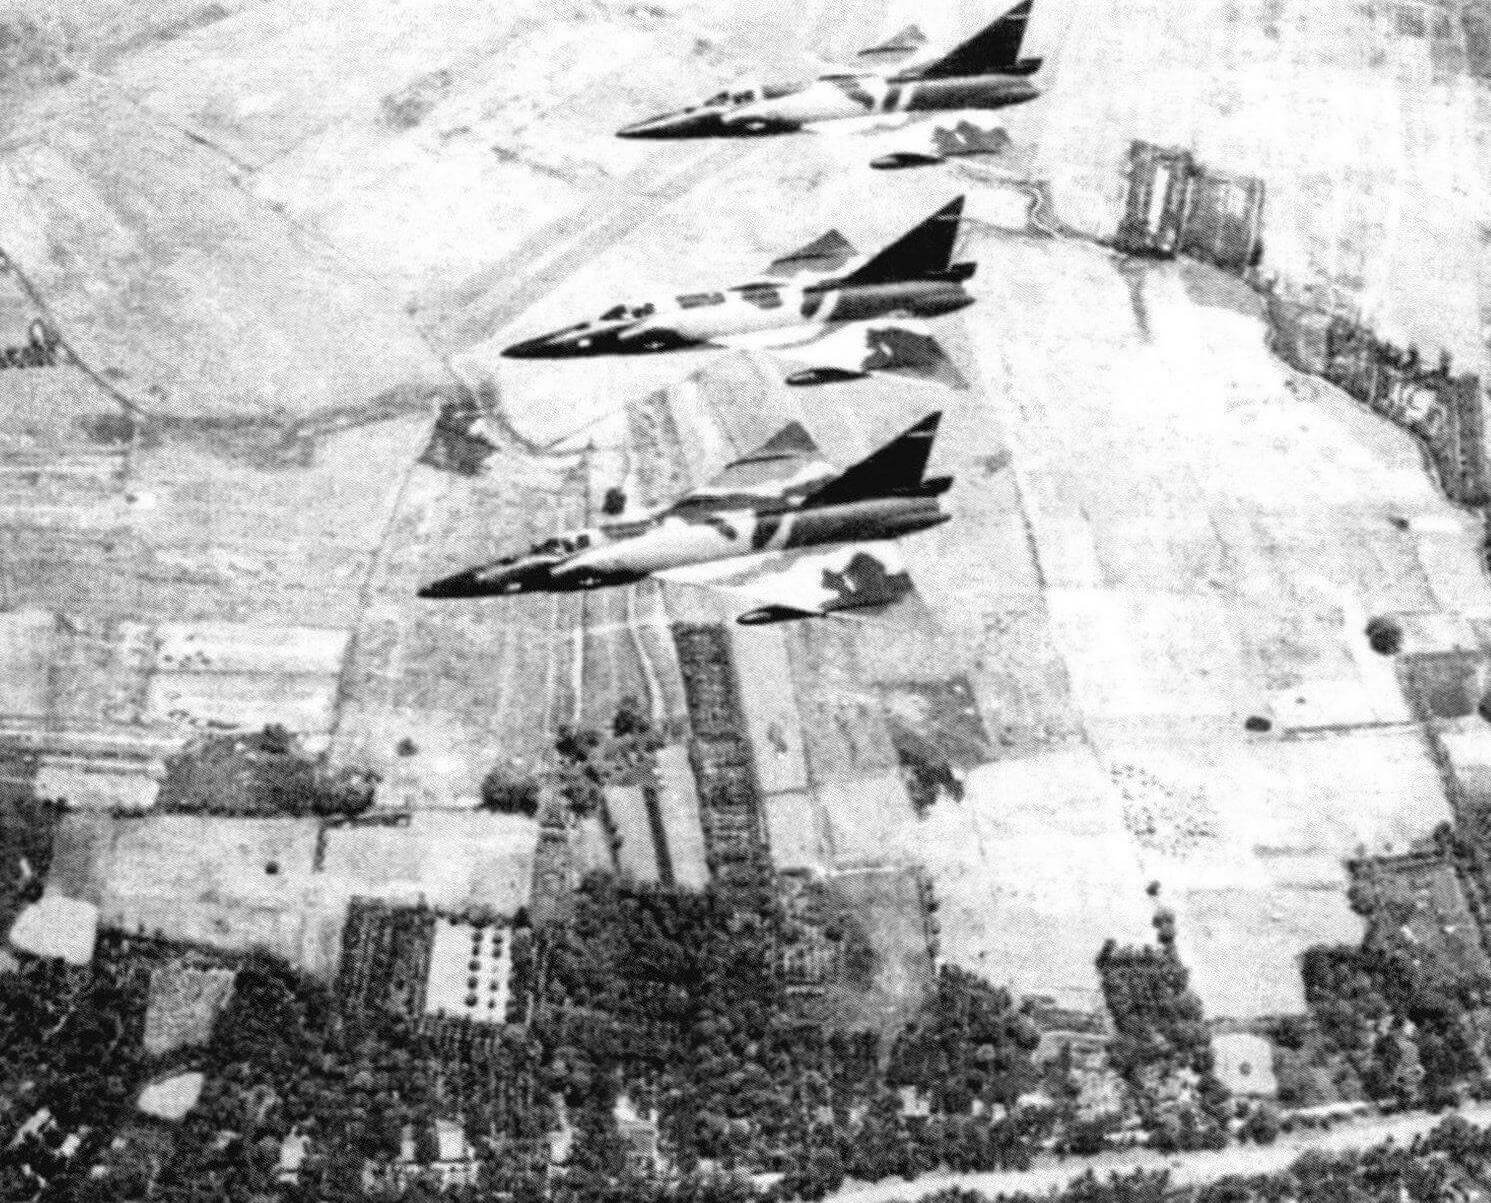 В конце 1966 года в обшей сложности двадцать две «Двойки» участвовали в ПВО в Юго-Восточной Азии в качестве меры против бомбардировщиков Ил-28 Северного Вьетнама. Двадцать «Двоек» базировались в Южном Вьетнаме и в Таиланде. По крайней мере четырнадцать из них находились в пятиминутной готовности к вылету, остальные - в часовой. До налетов Ил-28 дело не дошло, поэтому самолеты стали привлекать к сопровождению бомбардировщиков В-52 или для прикрытия самолетов ВВС, но исключительно в воздушном пространстве Южного Вьетнама, поэтому атаковать МиГ-21 не было шансов. Обратите внимание на «ломаный» камуфляж